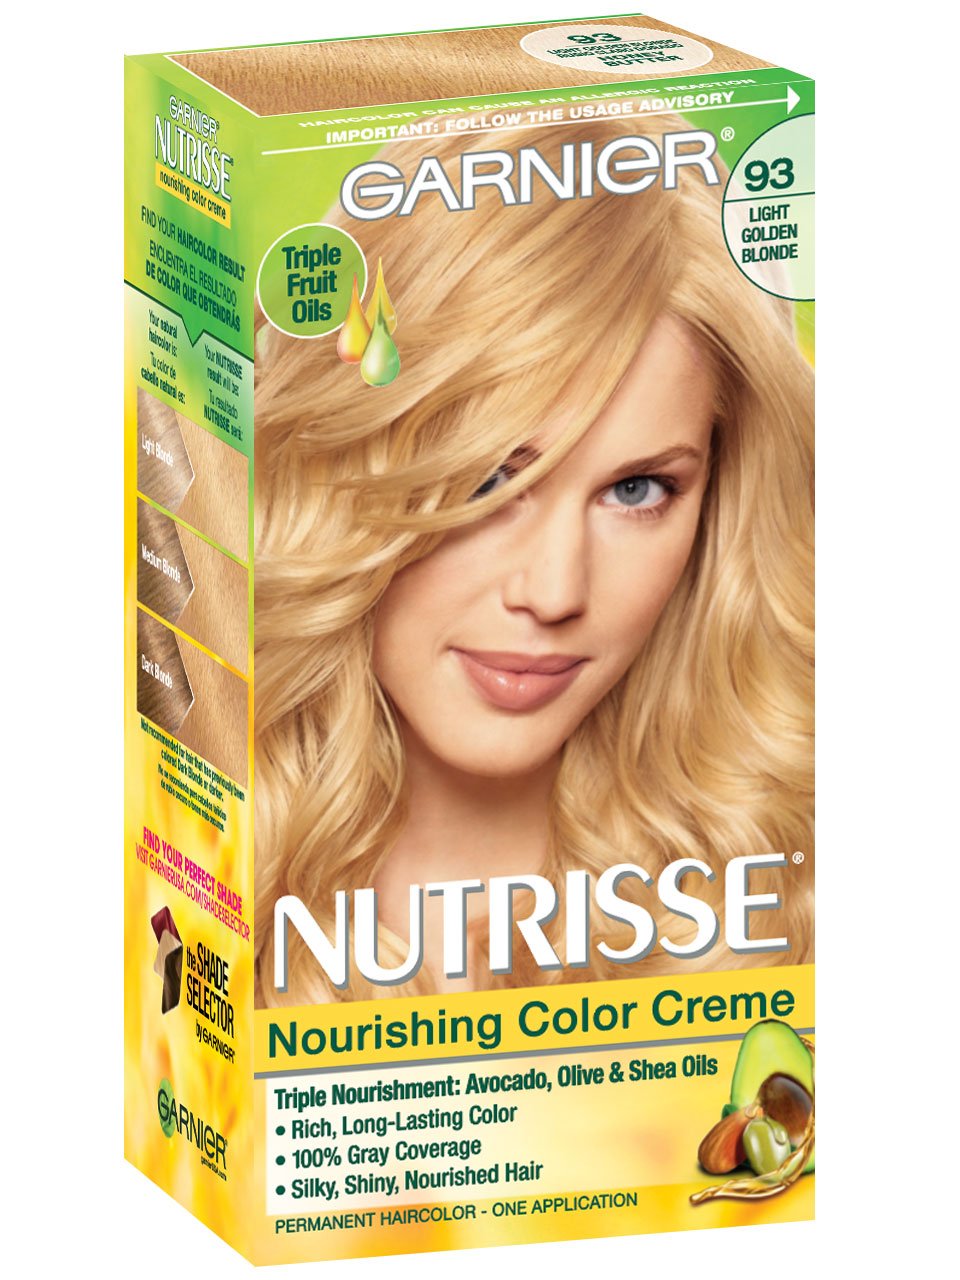 Nutrisse Nourishing Color Creme Light Golden Blonde 93.